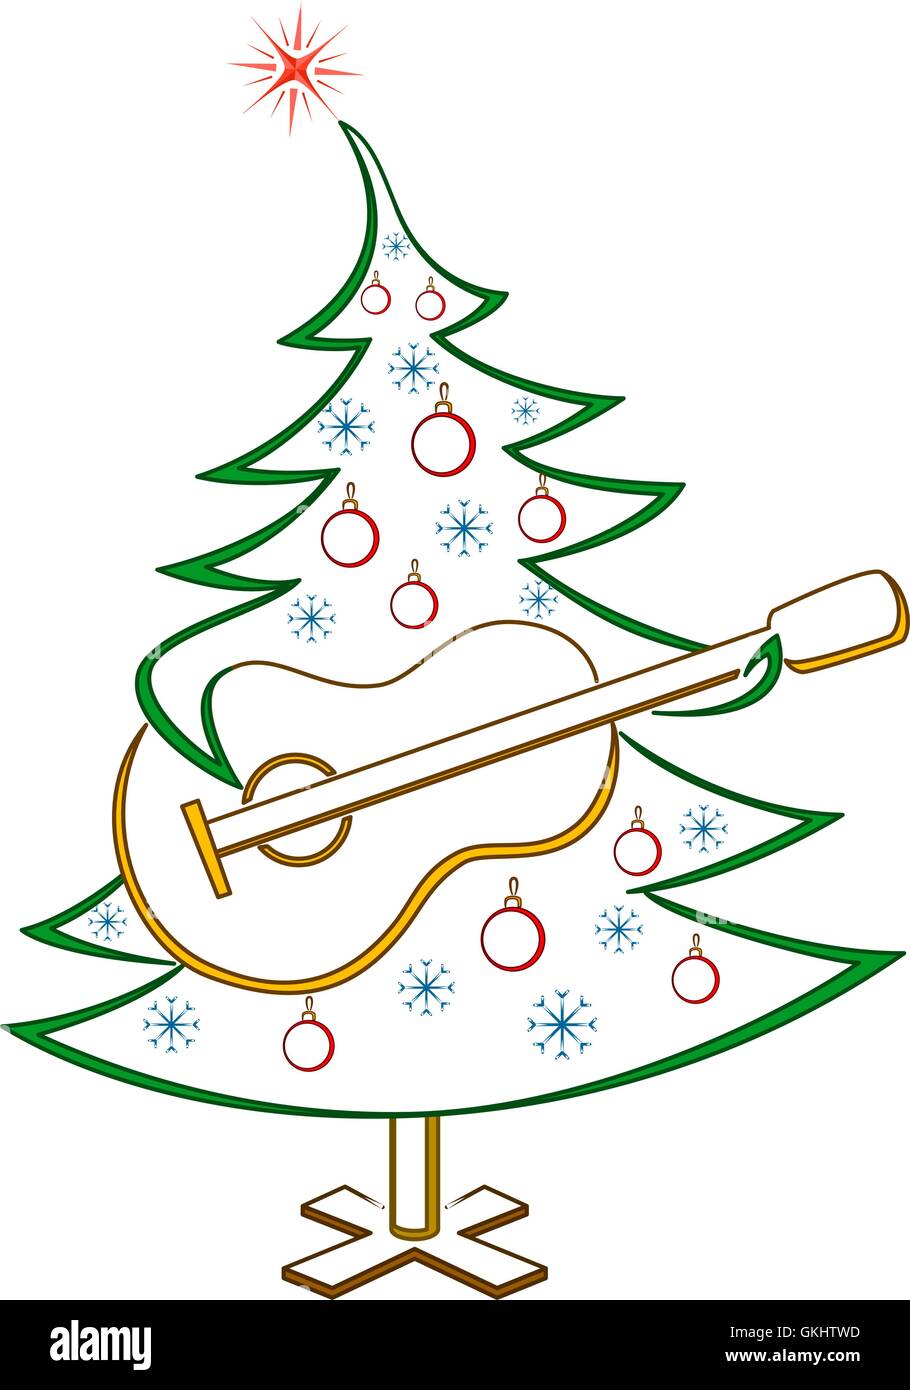 Weihnachtsbaum mit Gitarre, Piktogramm Stock-Vektorgrafik - Alamy